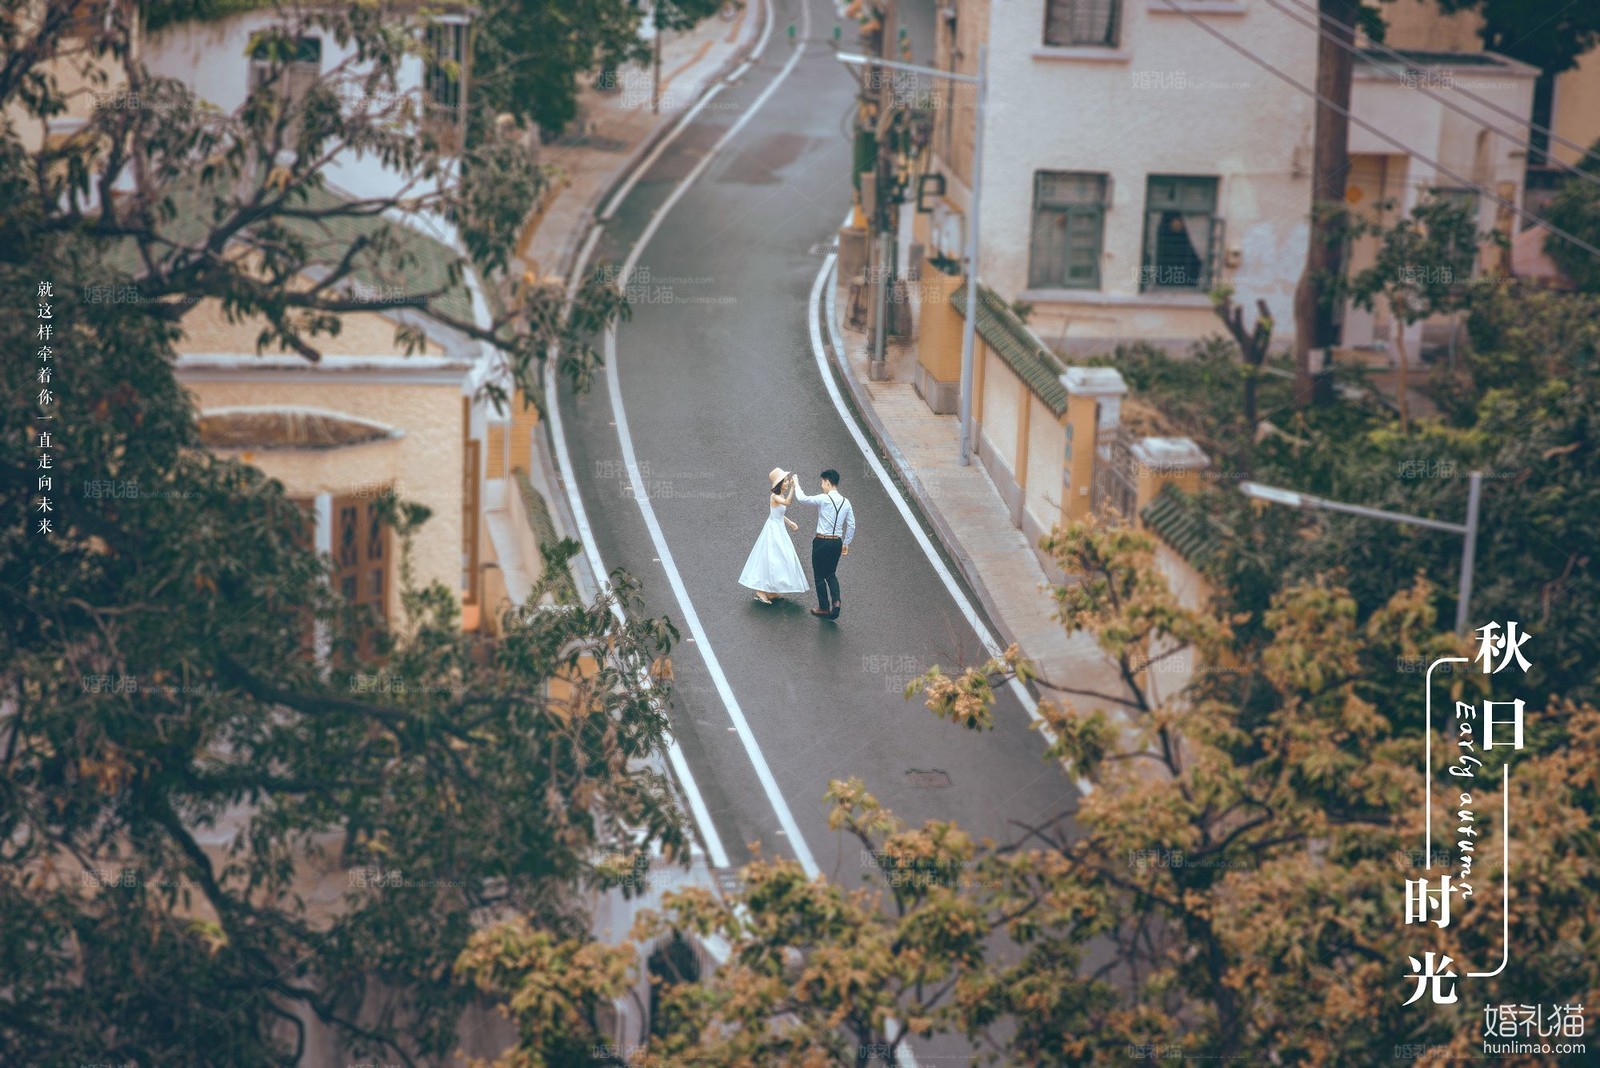 2018年11月广州结婚照,,茂名婚纱照,婚纱照图片